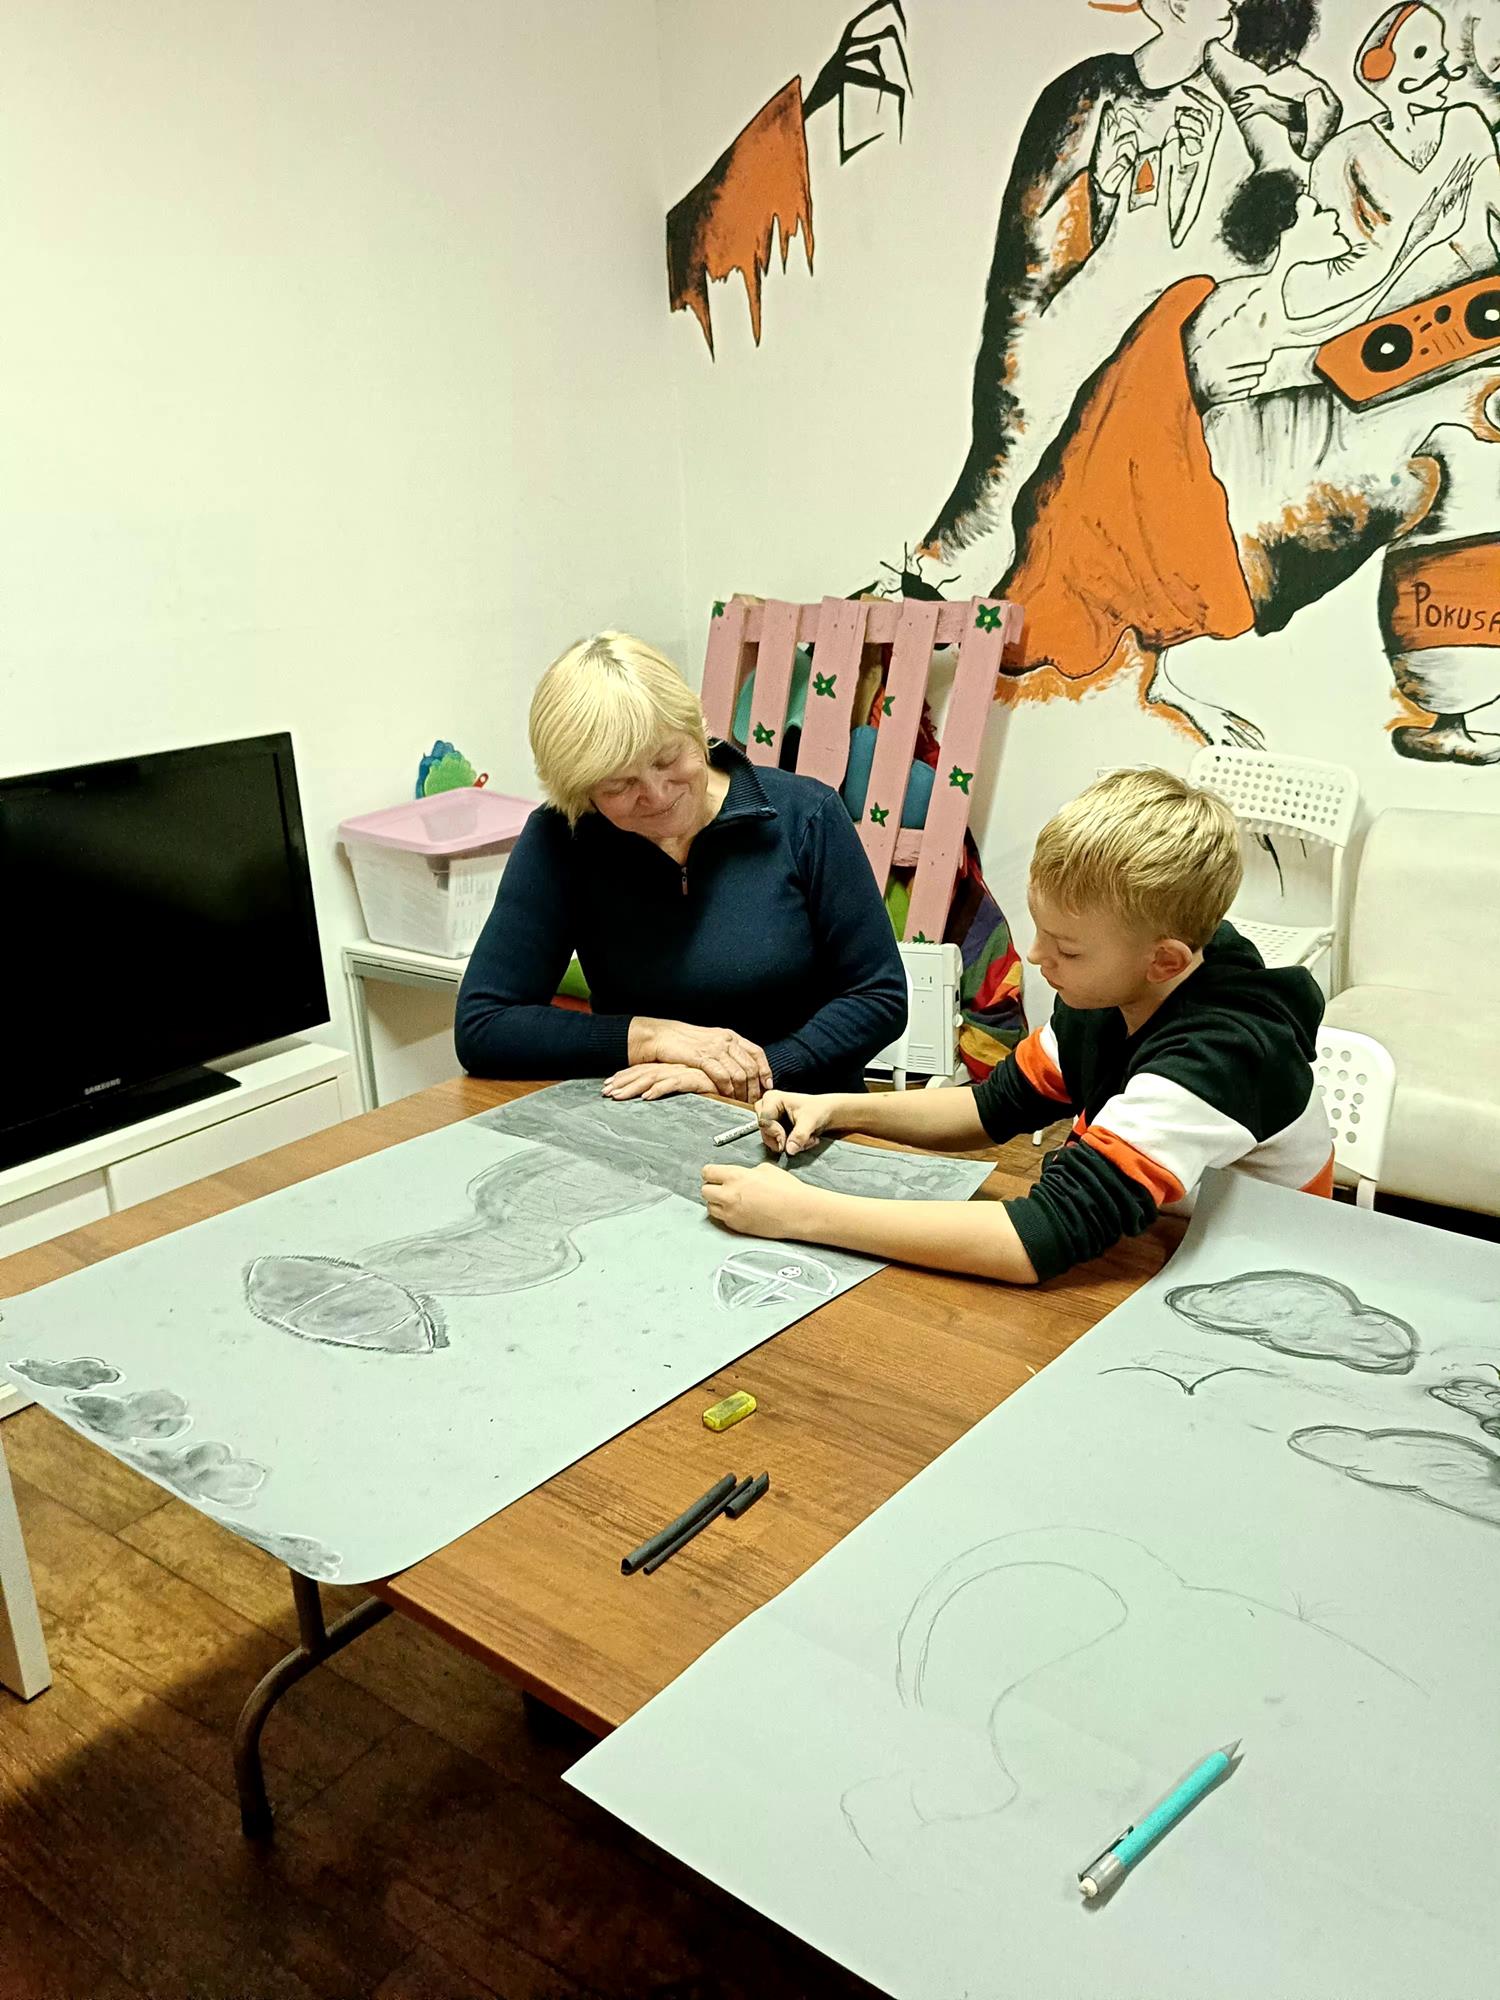 chłopiec i kobieta siedzą przy stole i malują obrazy węglem